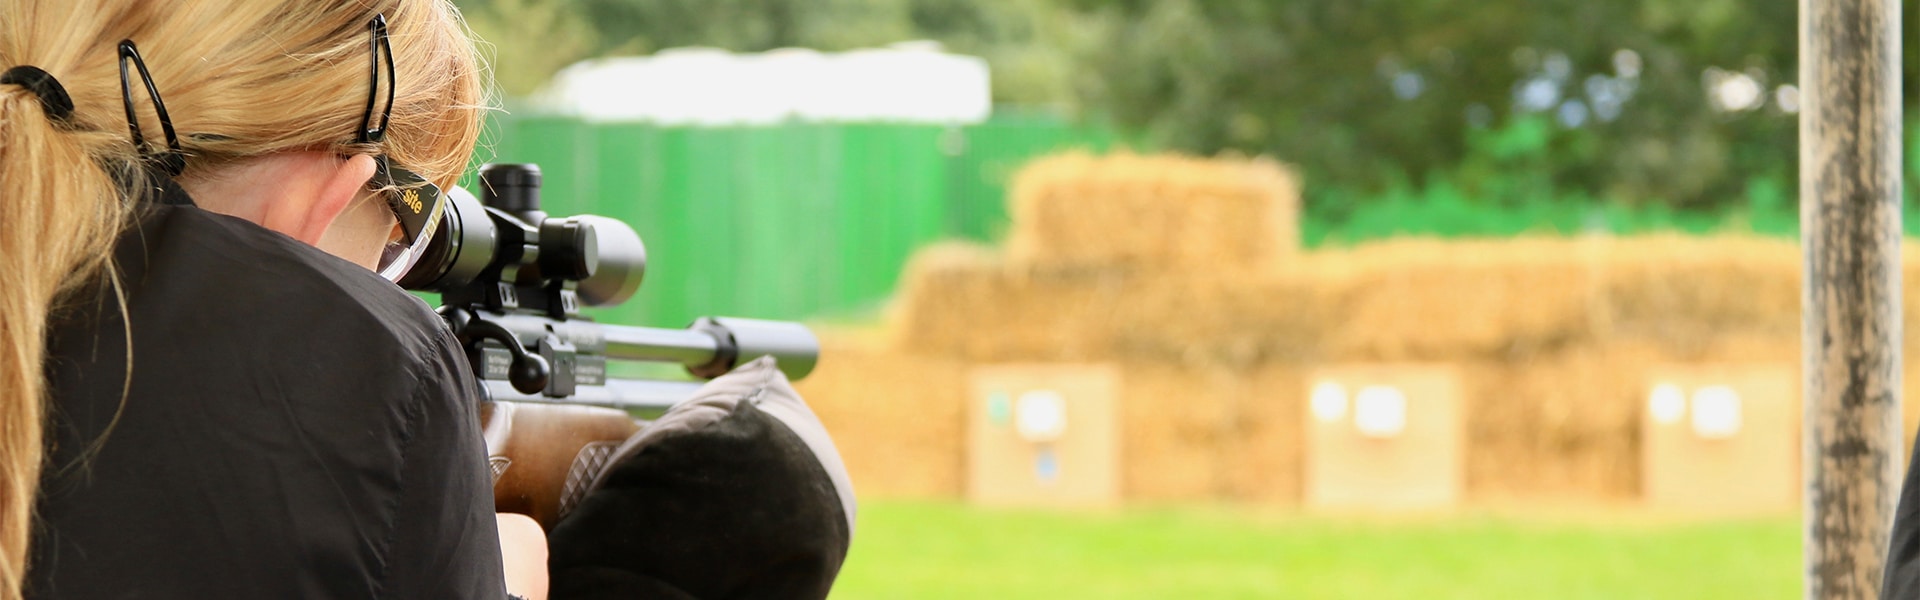 A young shot aiming an air rifle down a range